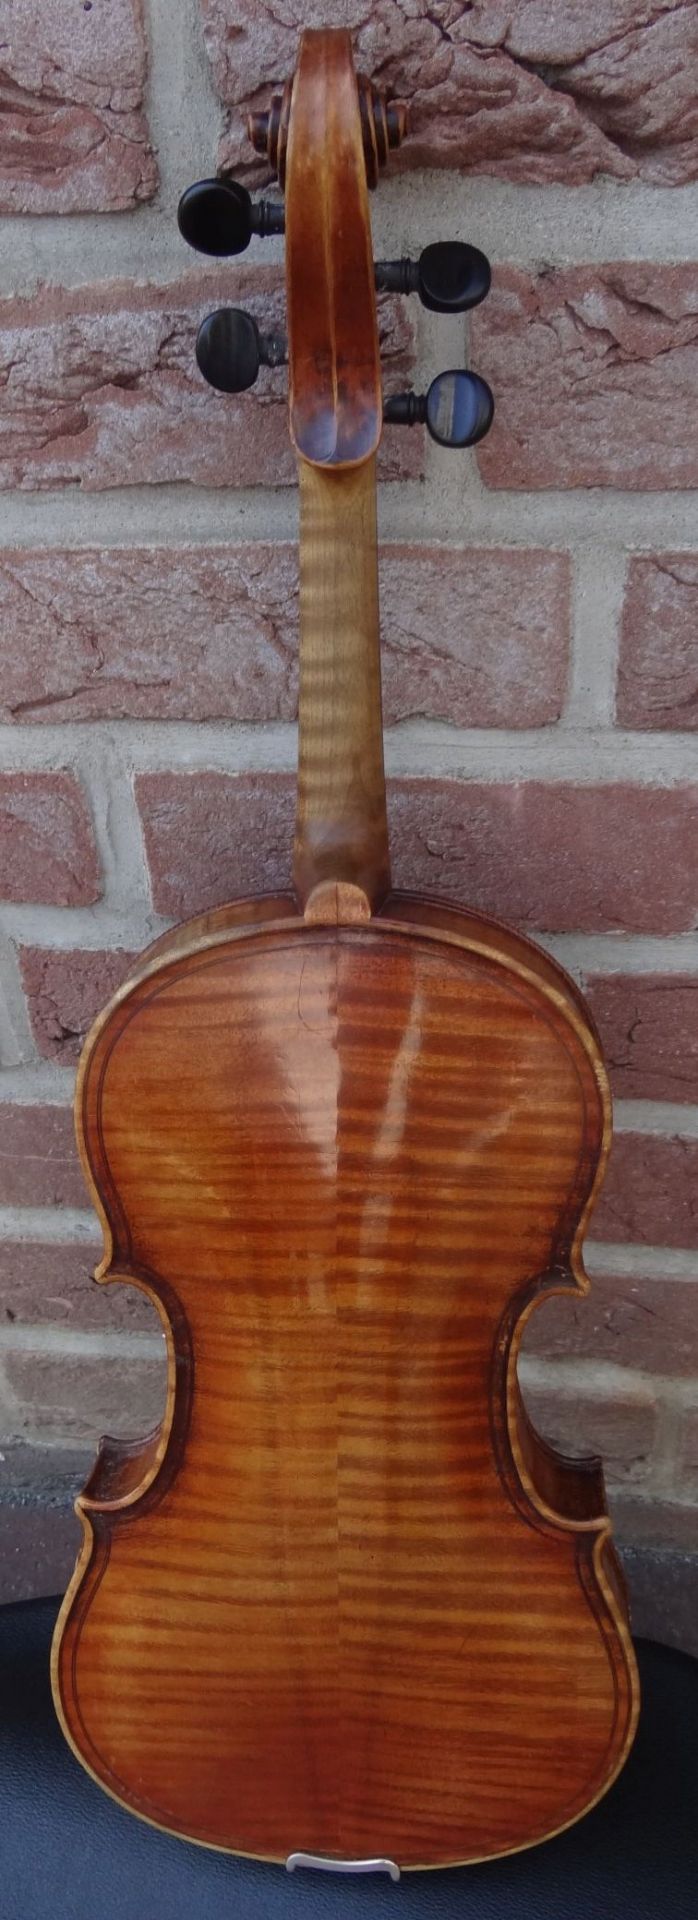 alte Geige im Koffer, innen Etikett "Ciovan Paolo Meggine", 19/20 Jhd?, L-62 cm, gut erhalten - Bild 7 aus 10